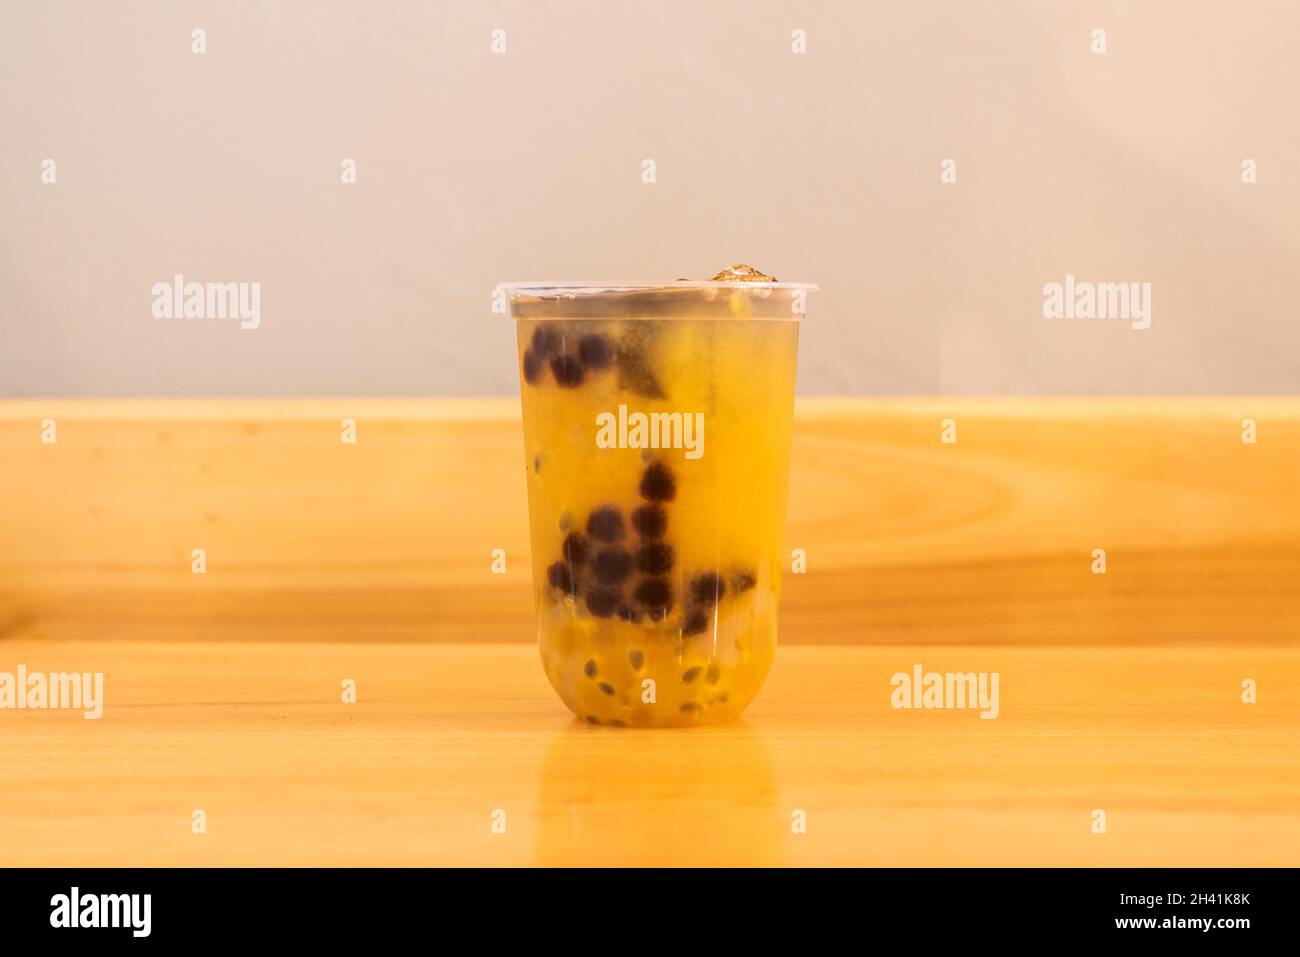 Passionsfruchttee mit Blasen oder Perlen, auch bekannt für seinen Bubble Tea auf Englisch oder auch als boba, ist ein süßschmeckendes Teegetränk, das in Taiwan erfunden wurde. Stockfoto